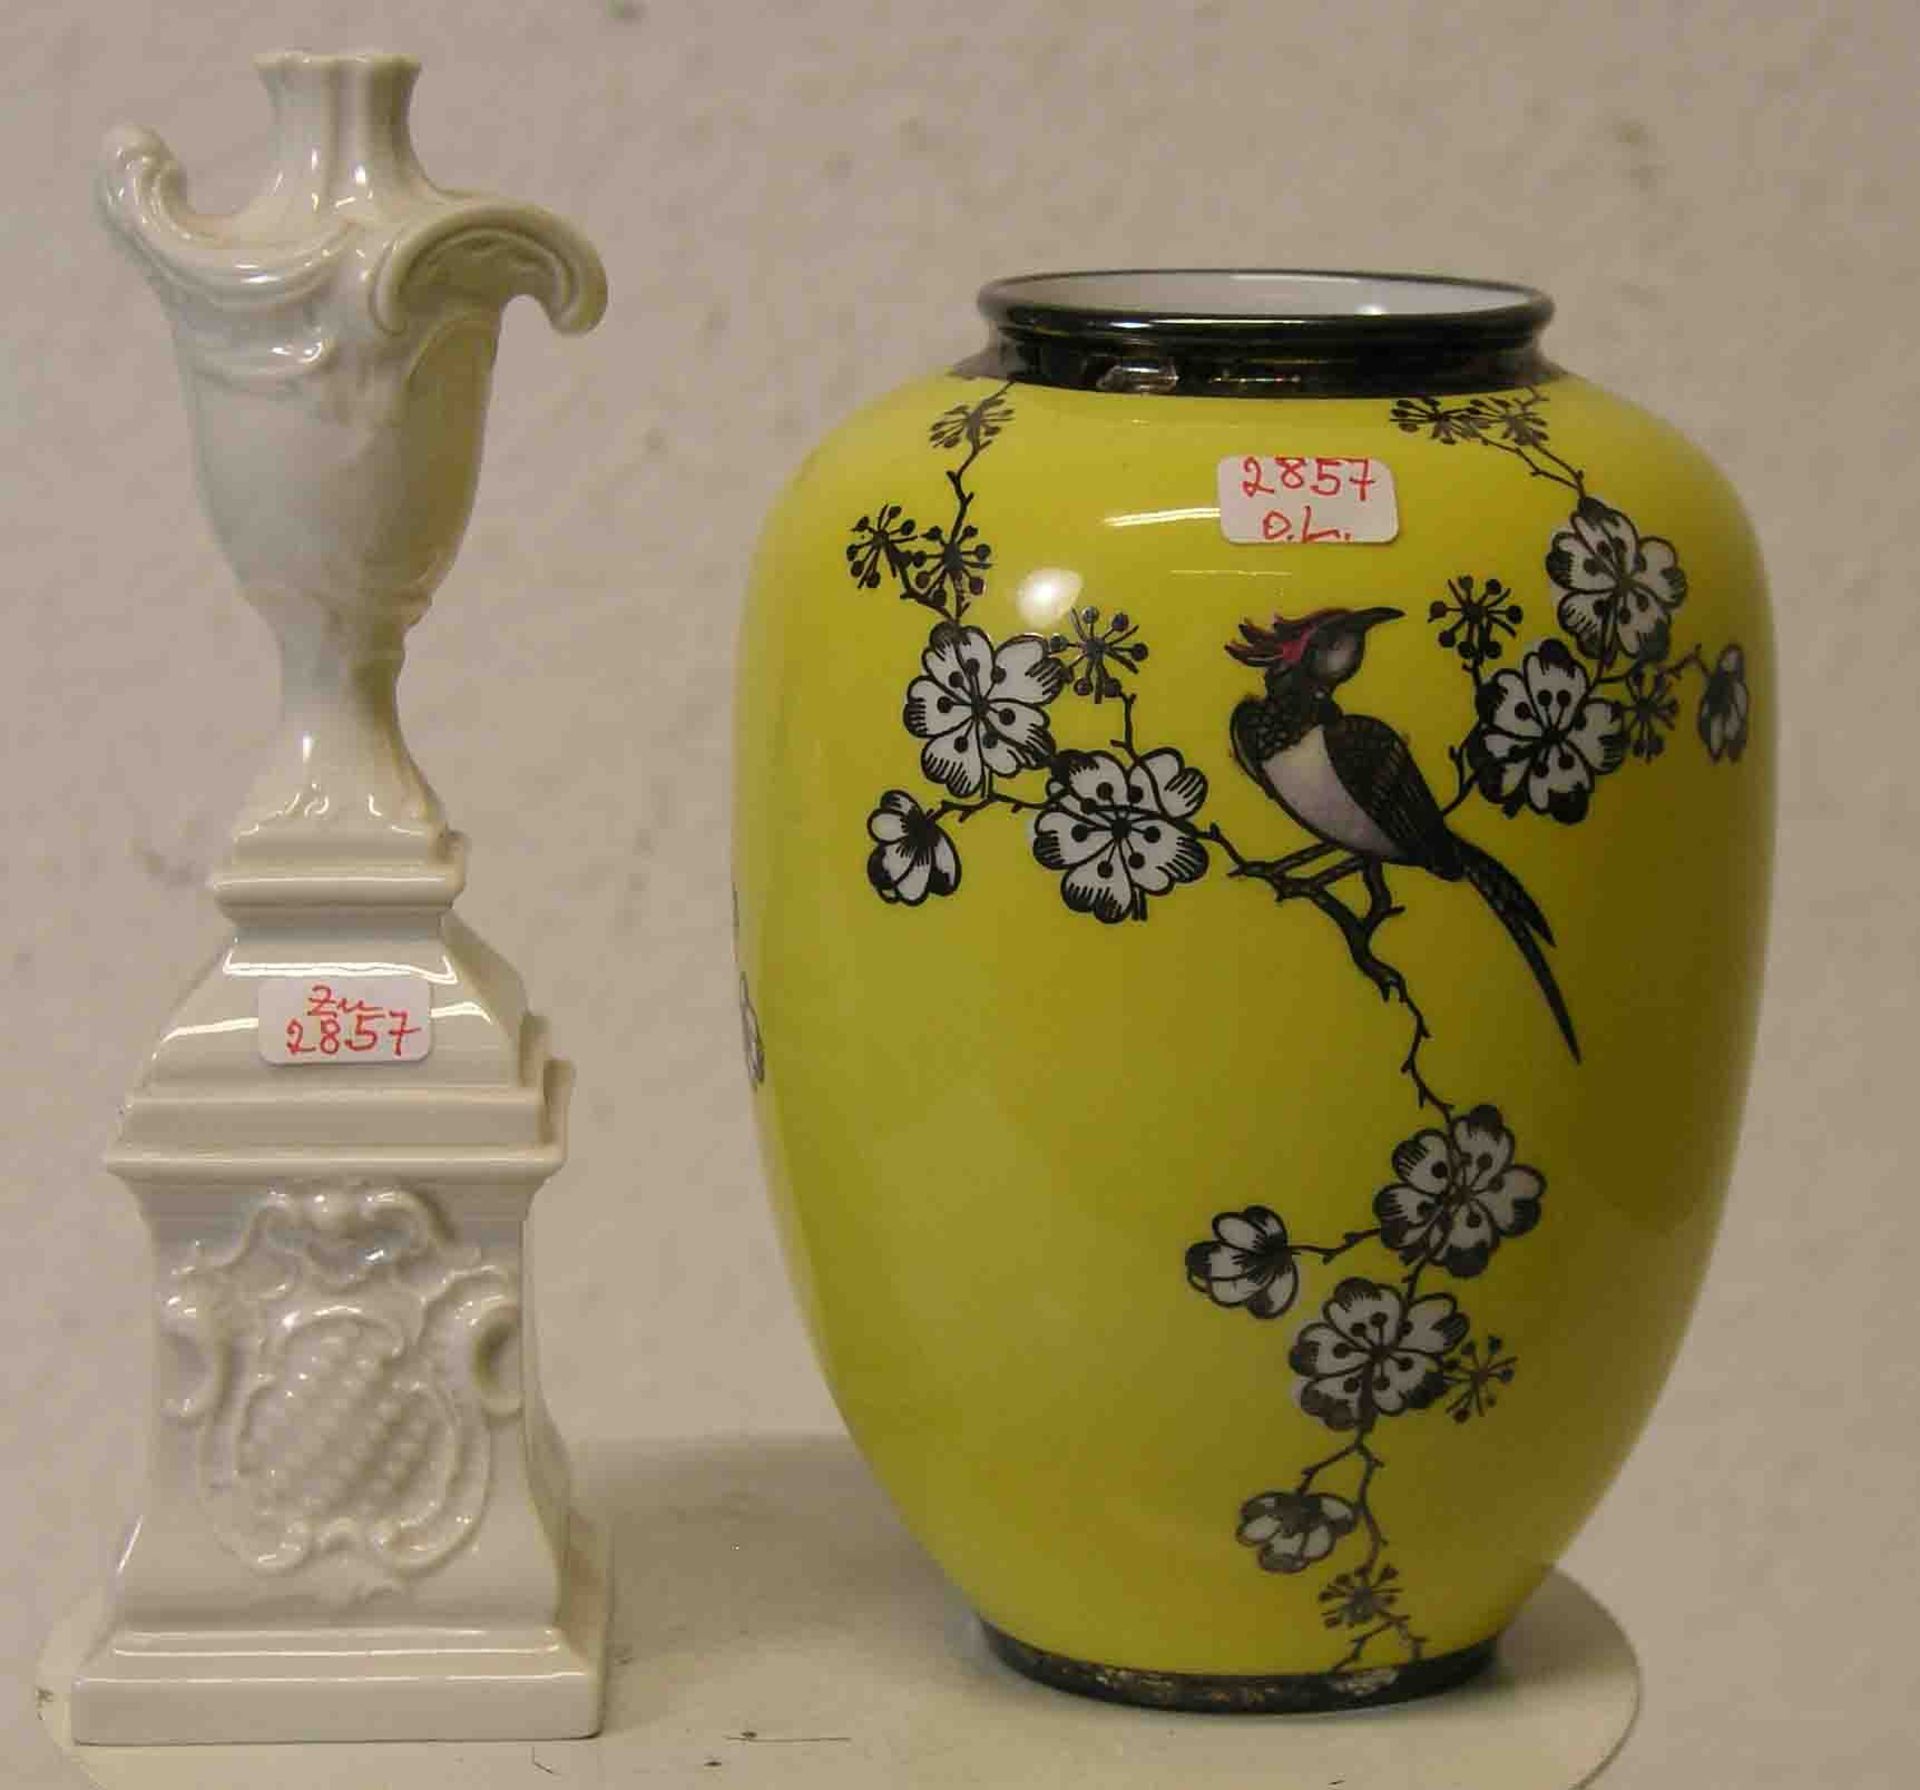 Amphore mit Sockel. Porzellan. Nymphenburg, Höhe: 18cm. Dazu: Vase "Silberporzellan".Schauseite